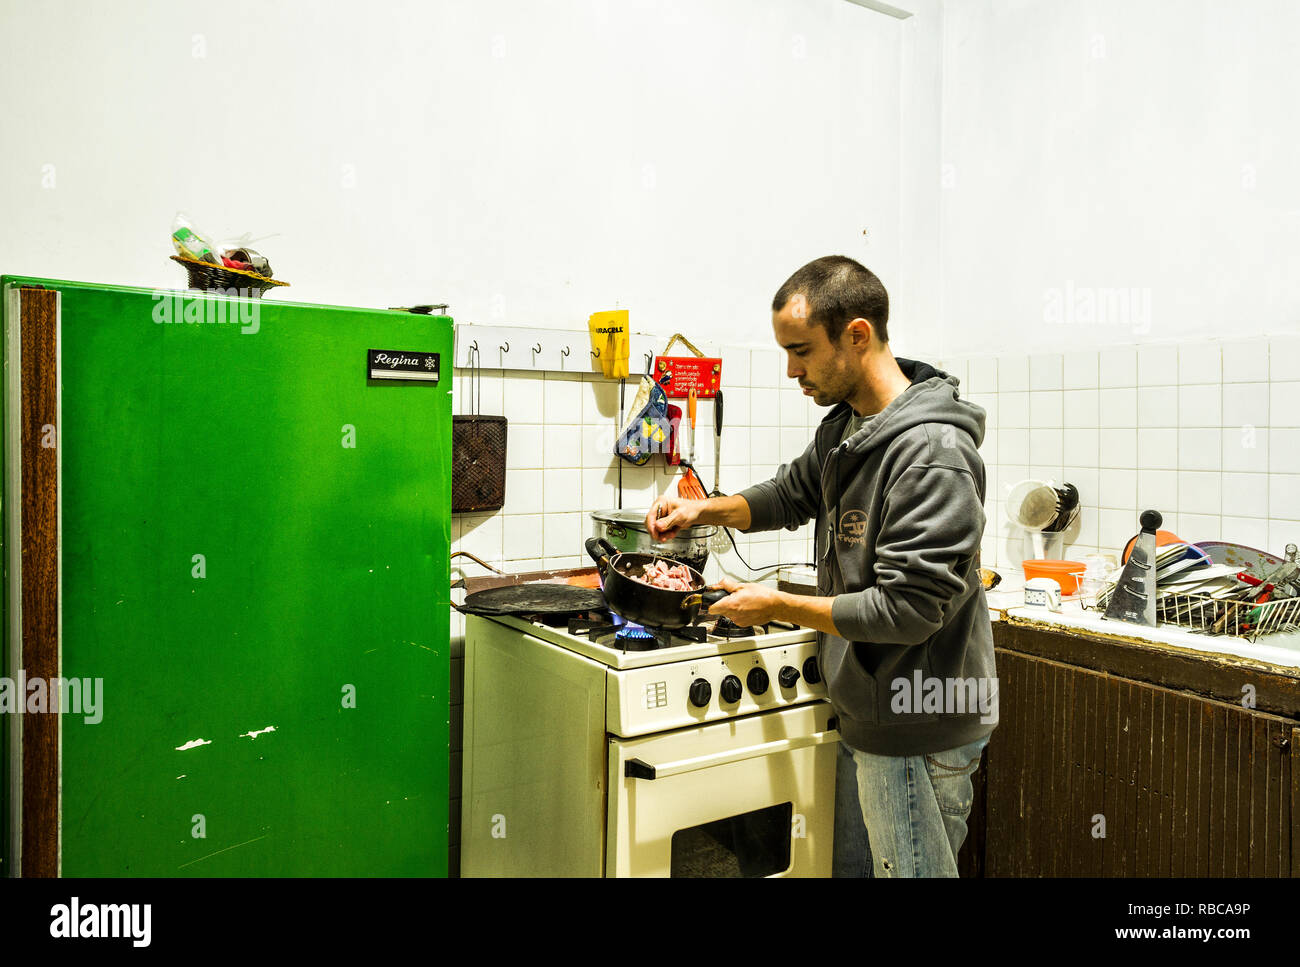 La cuisine de l'homme dans une auberge de cuisine. Merida, Mexique, Venezuela. Banque D'Images